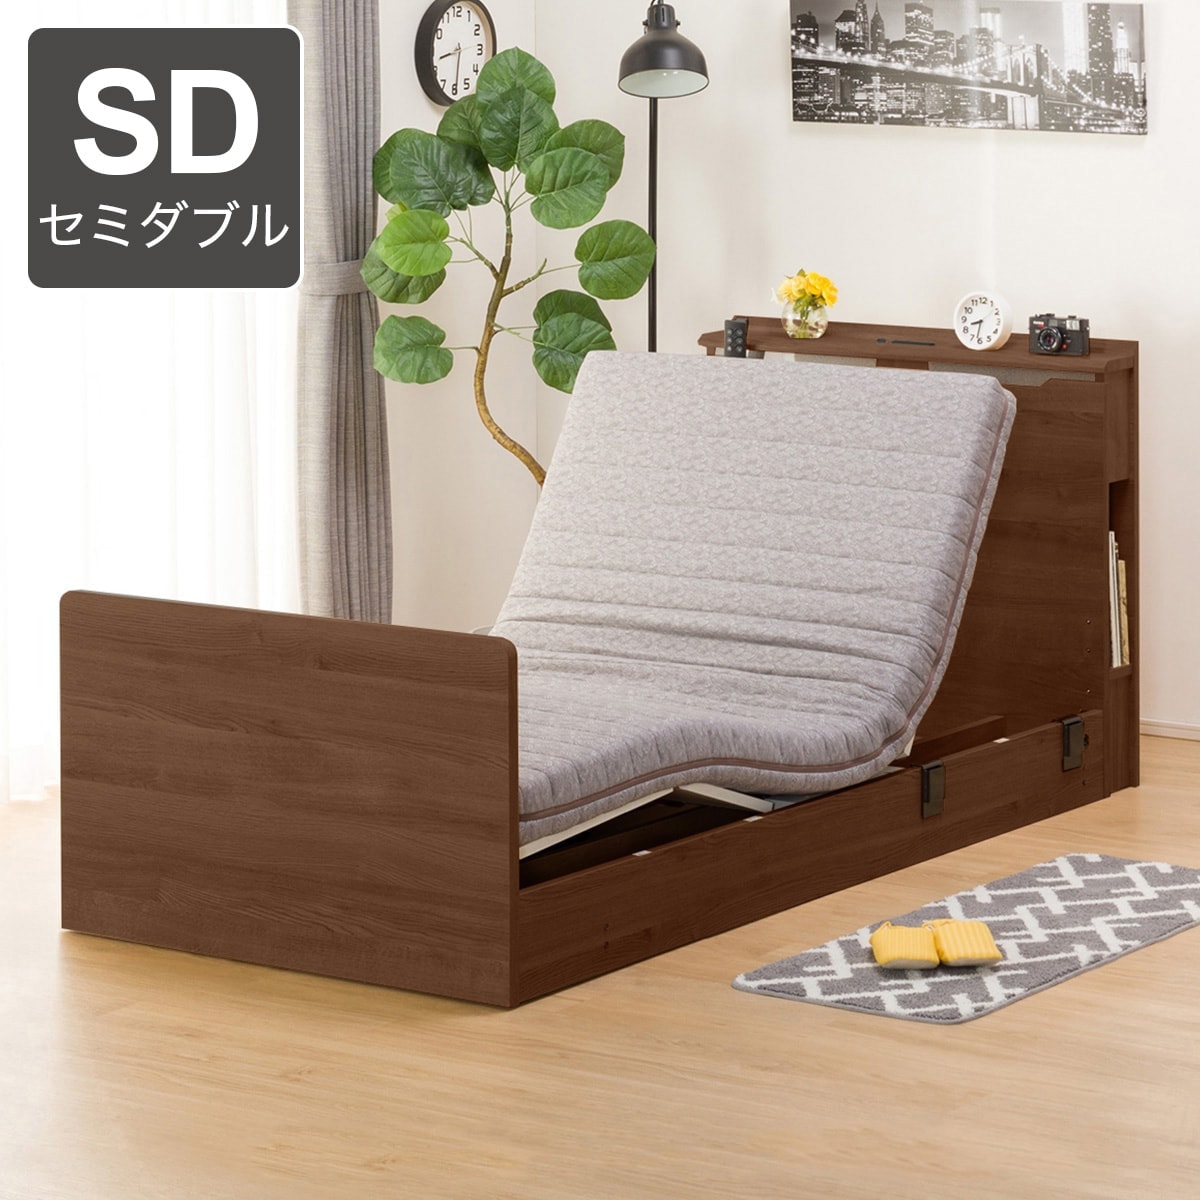 セミダブル ベッド セット | ニトリネット【公式】 家具・インテリア通販